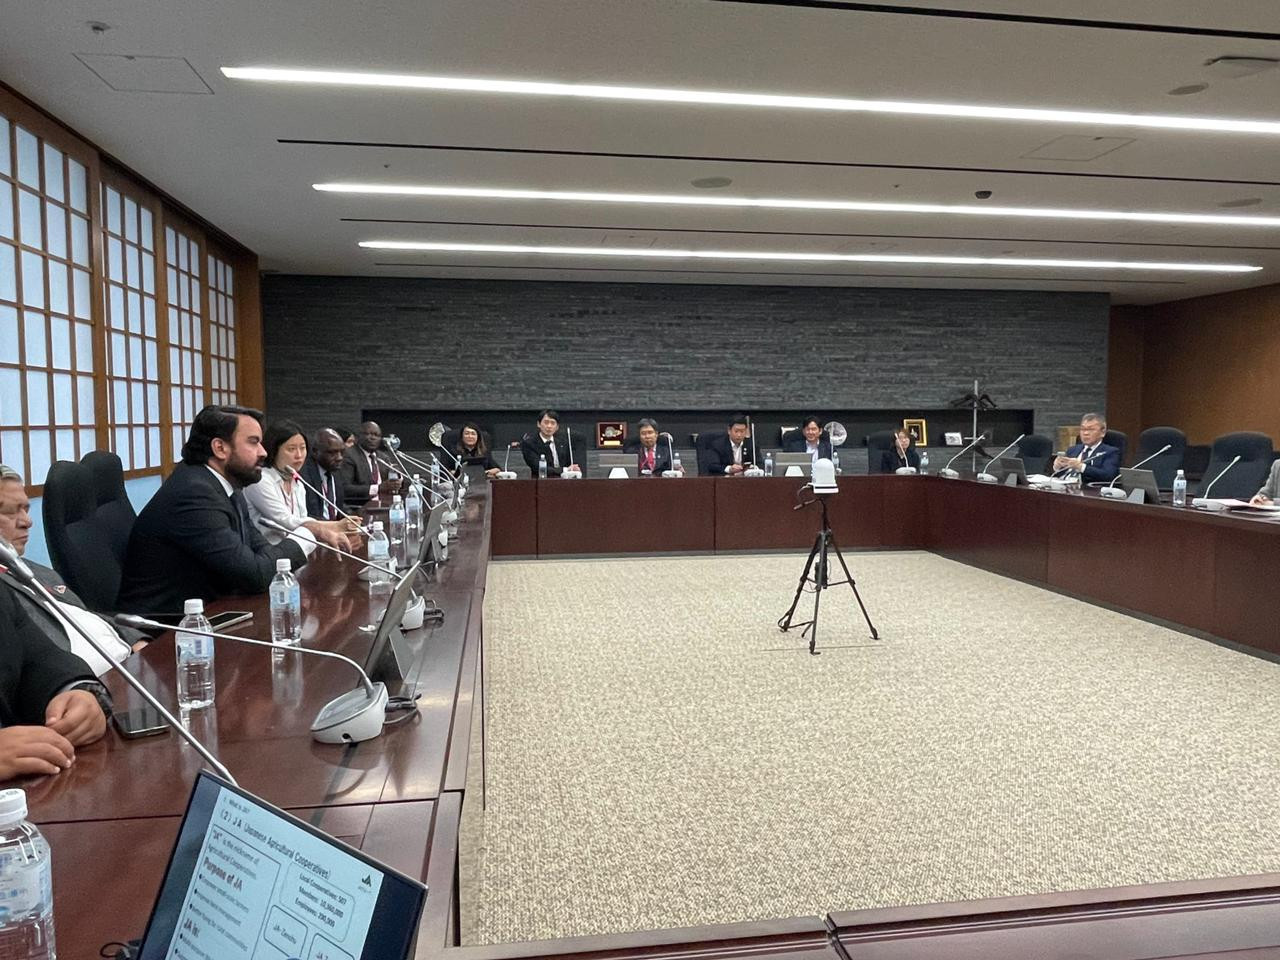  Encontros institucionais fortalecem laços do coop brasileiro com o Japão